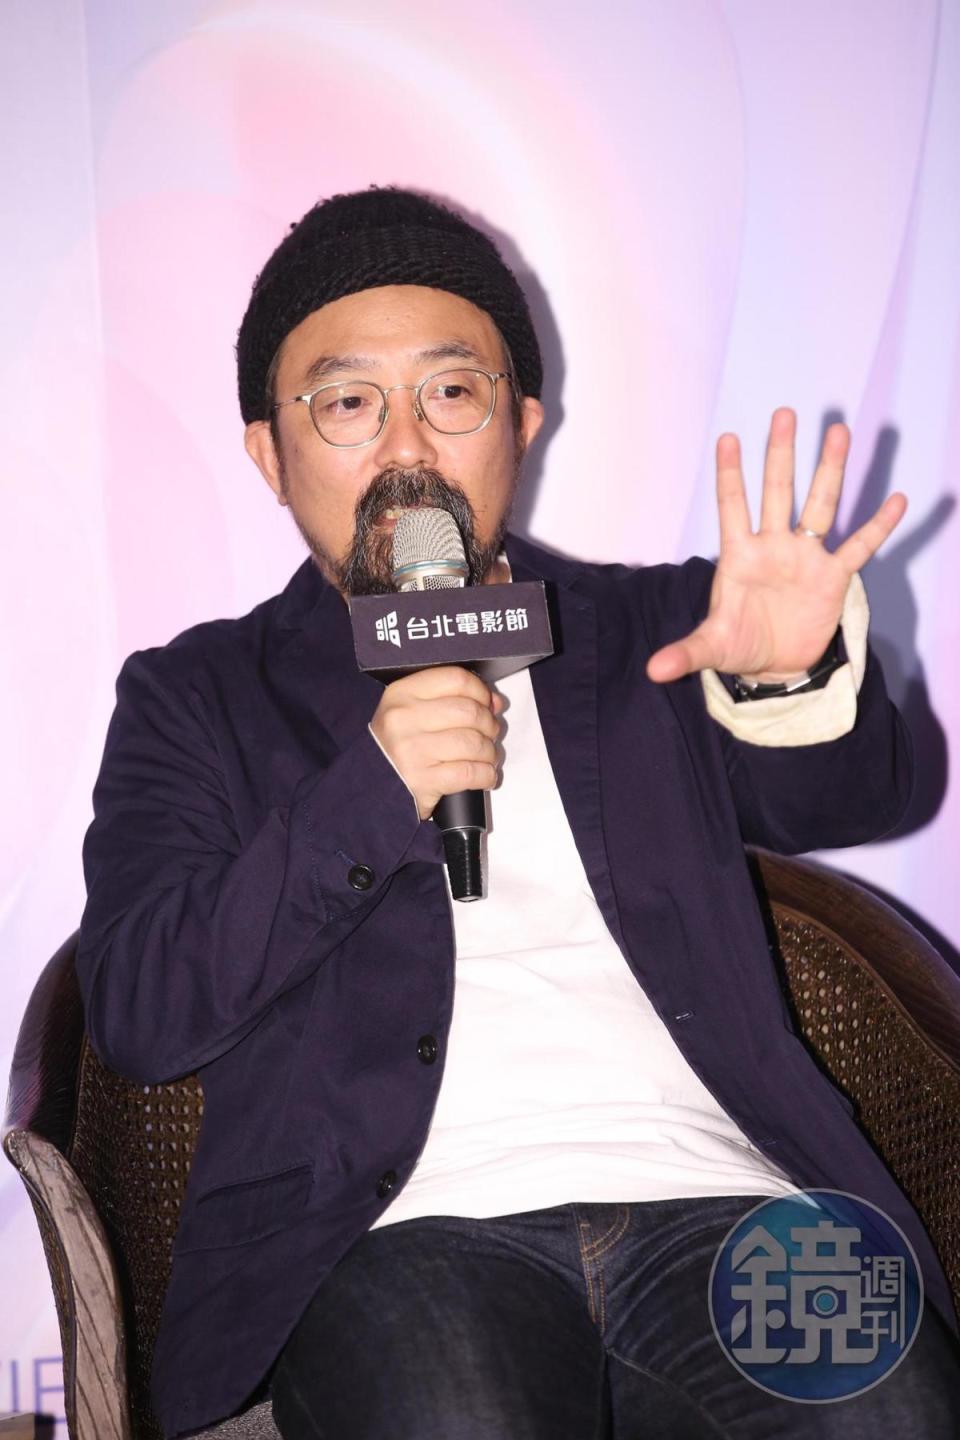 導演山下敦弘分享日版將故事舞台設定在京都的原因。